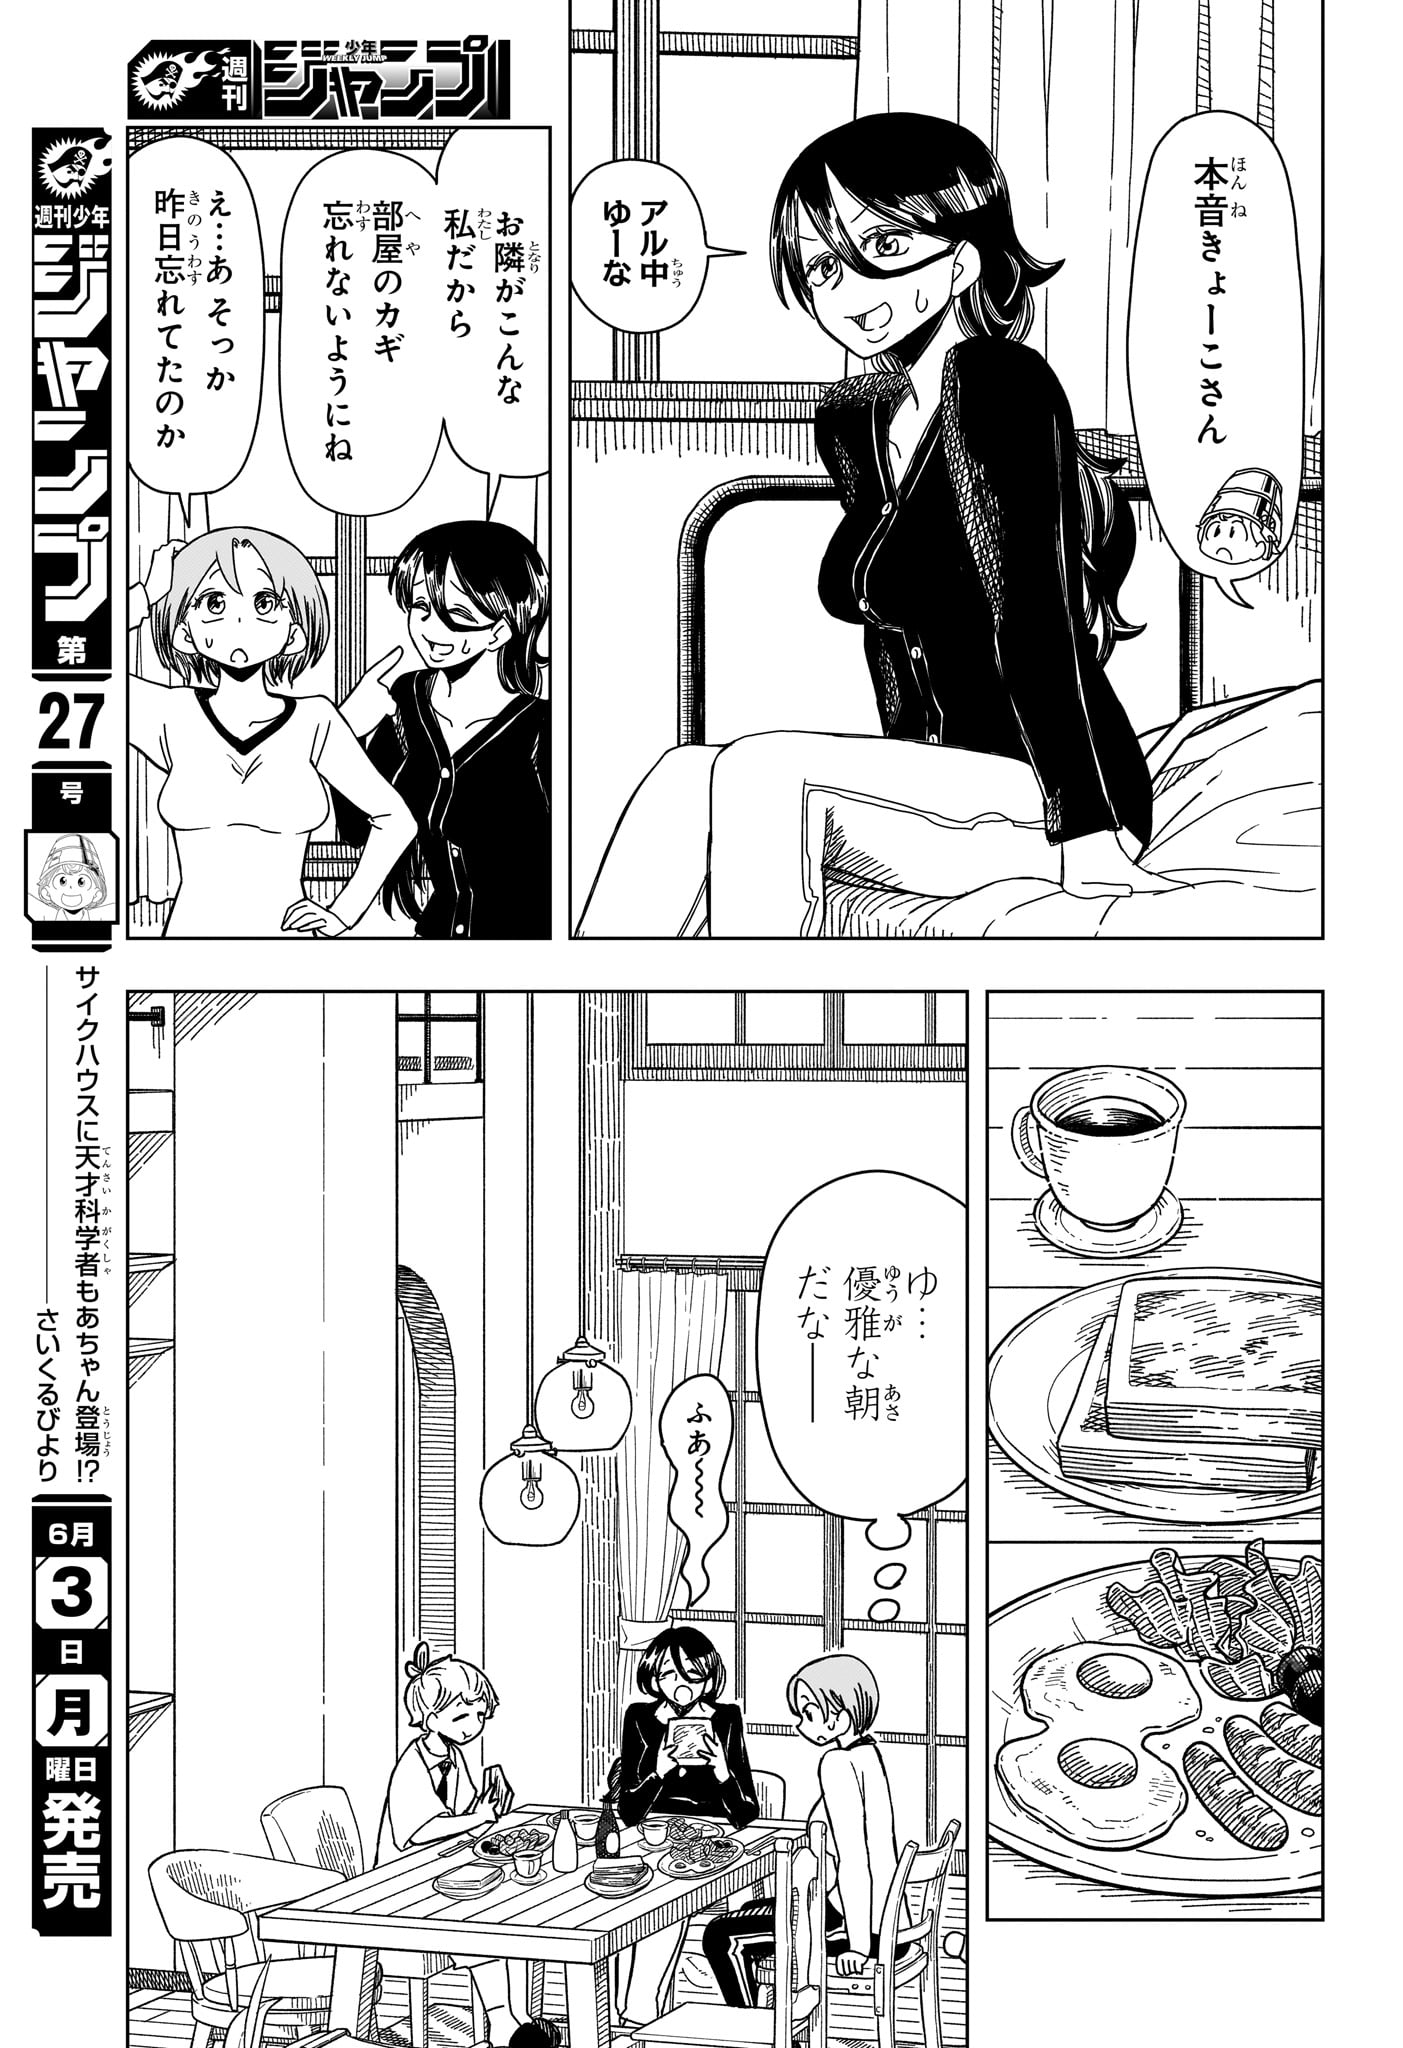 Saikuru Biyori - Chapter 3 - Page 7